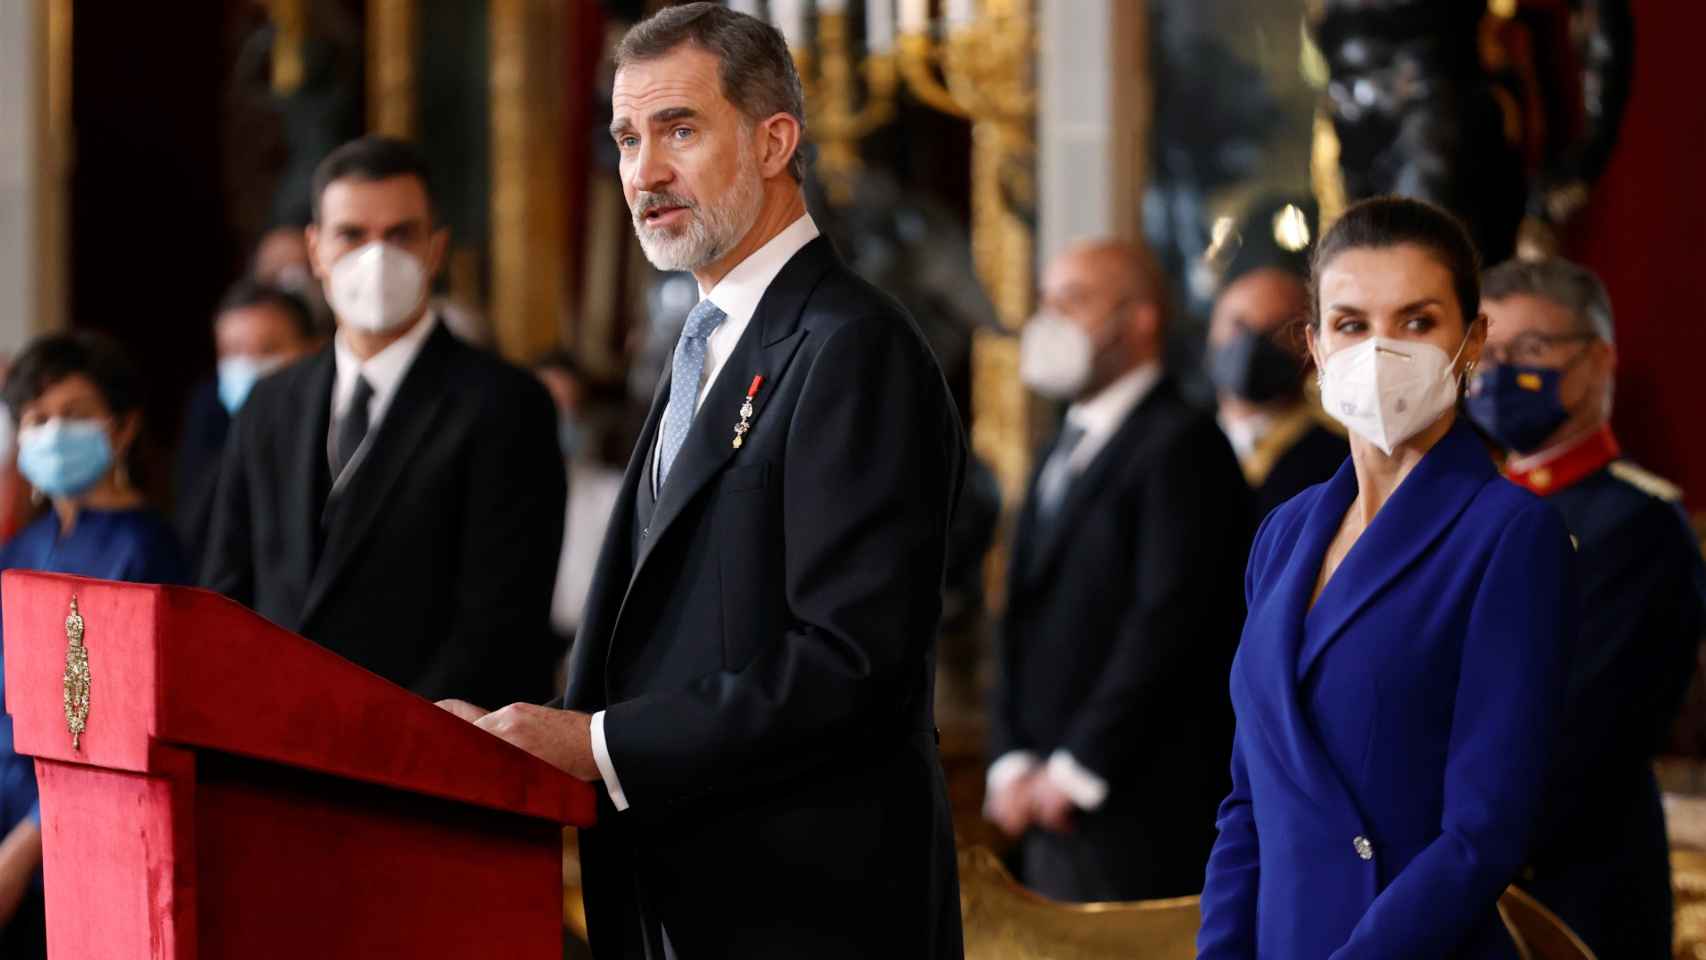 Los Reyes en la recepción de honor al cuerpo diplomático.